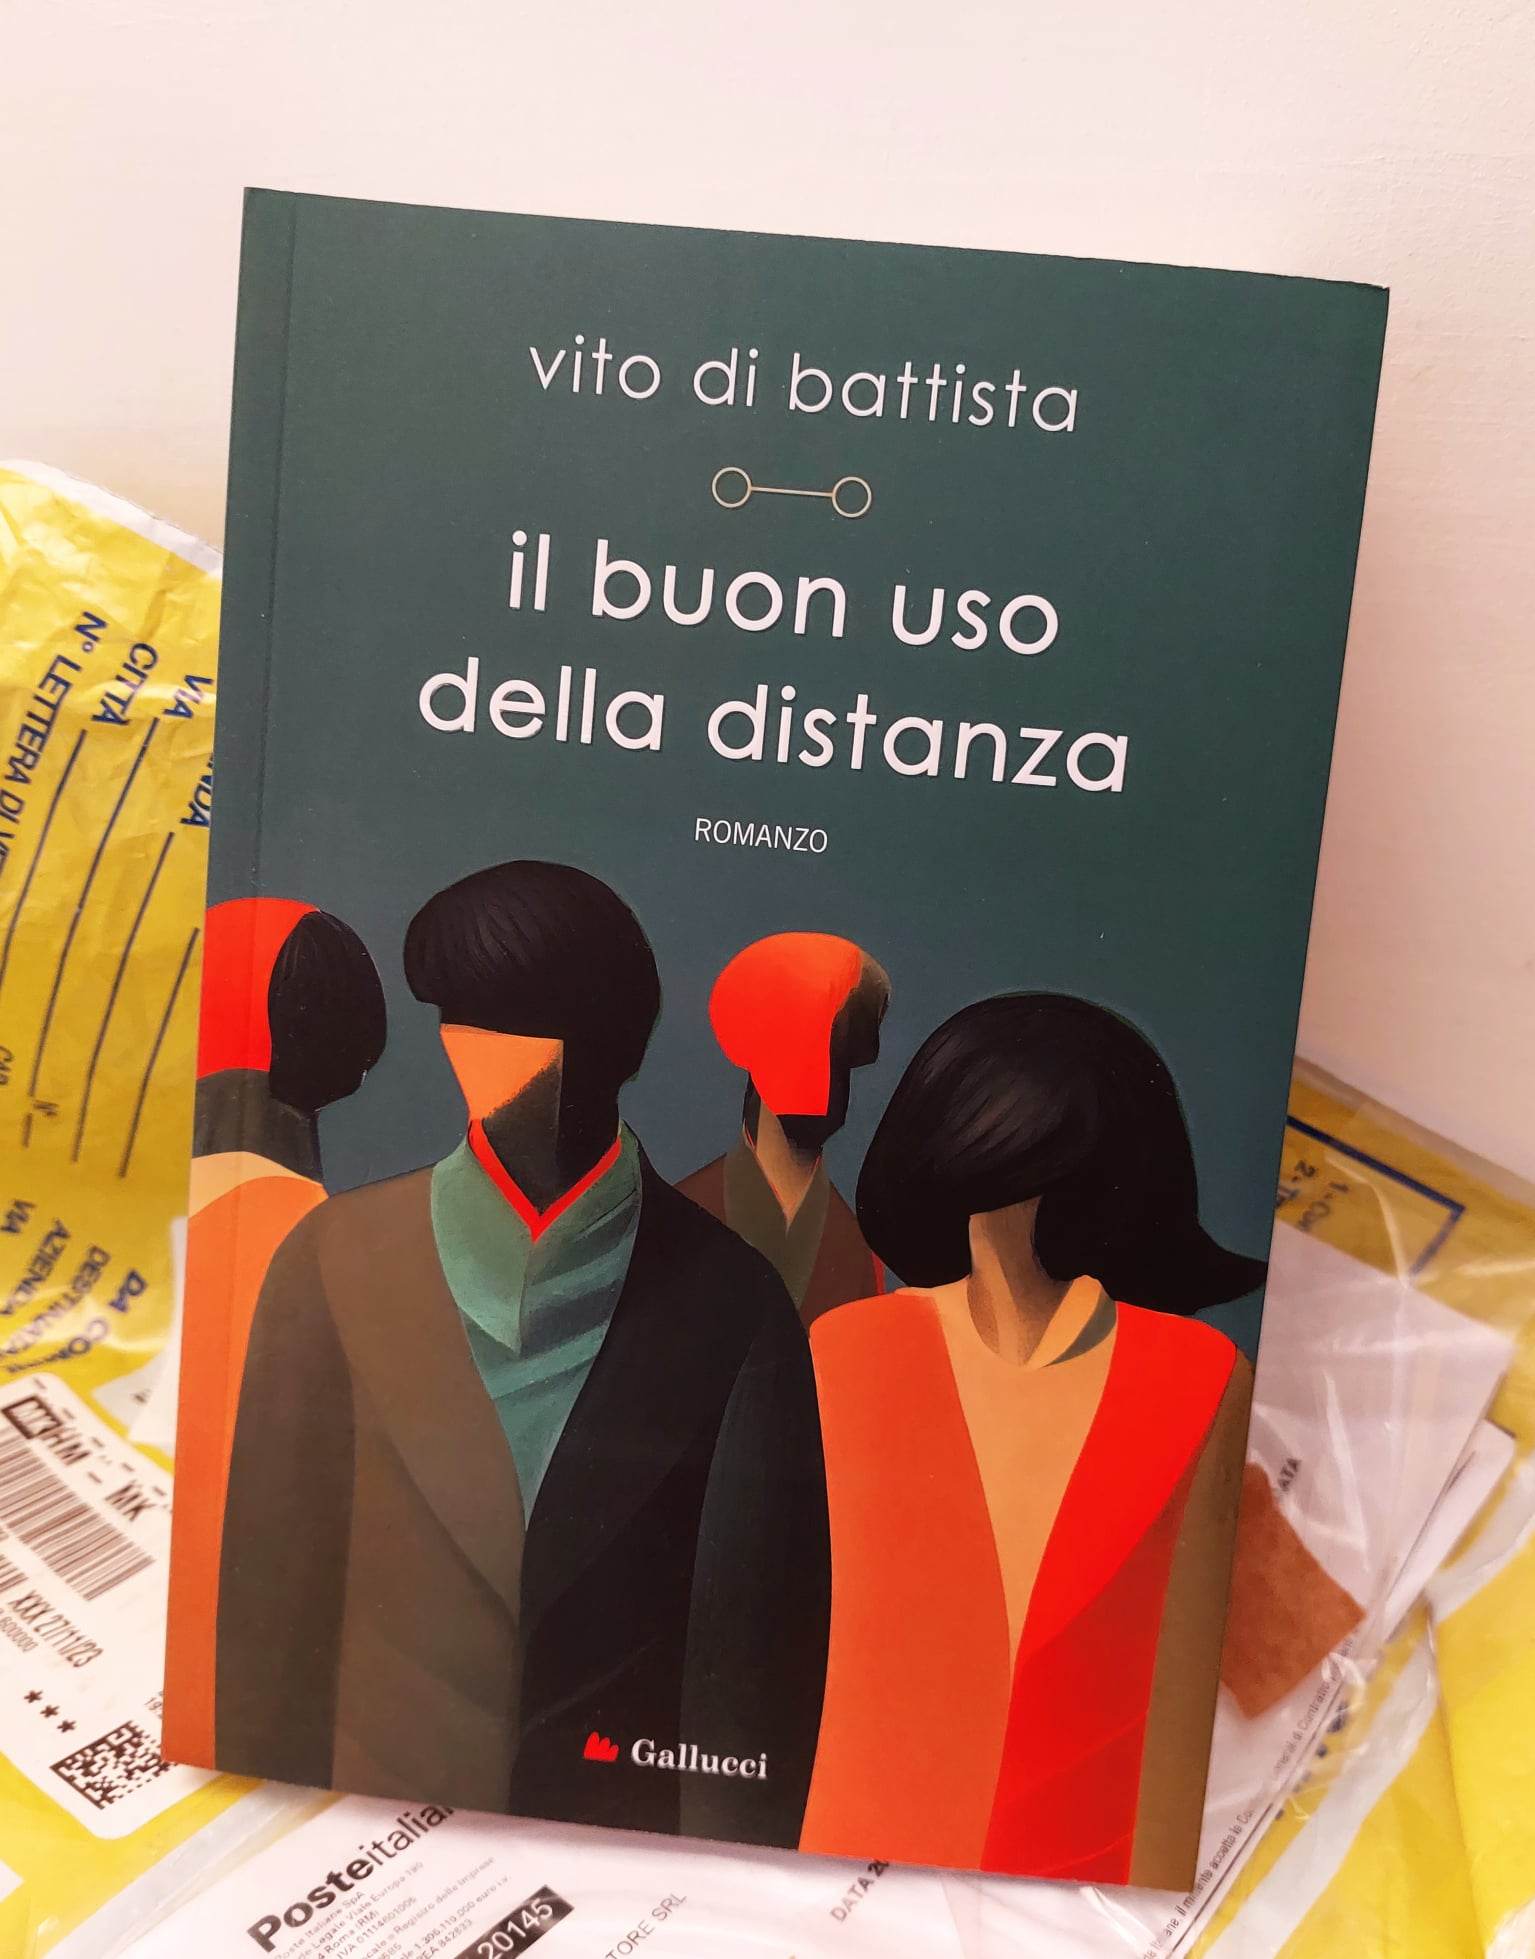 romanzo] Il buon uso della distanza: intervista a Vito di Battista 